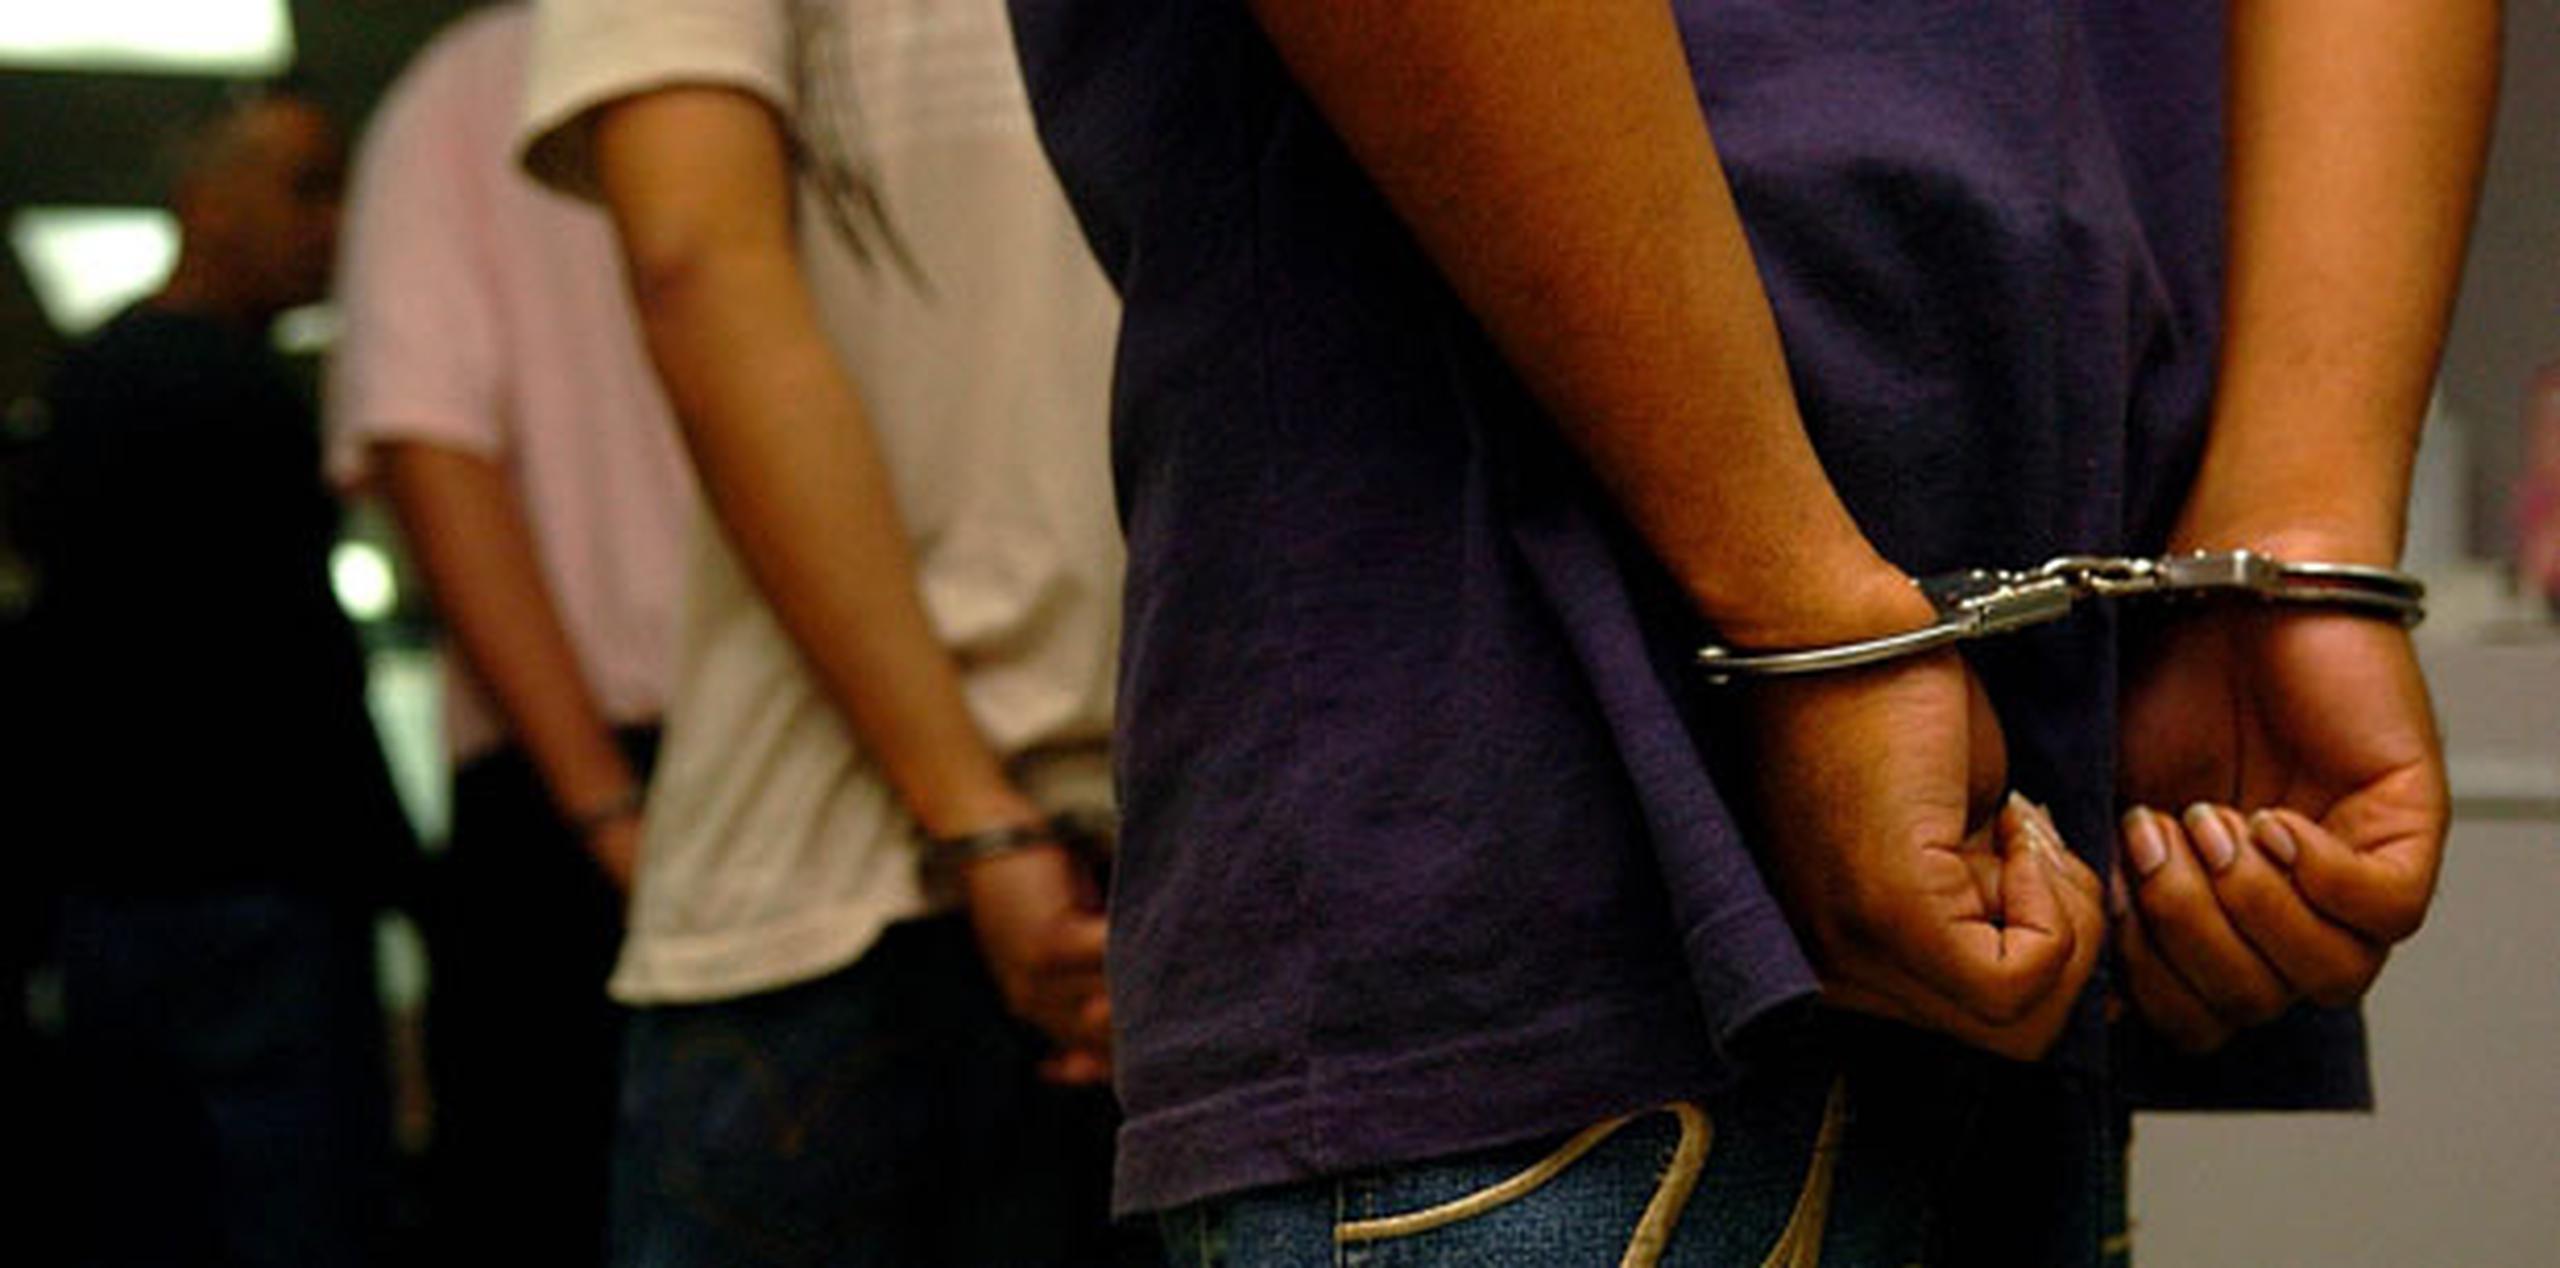 Los arrestados tienen entre 18 a 32 años de edad. (Archivo)